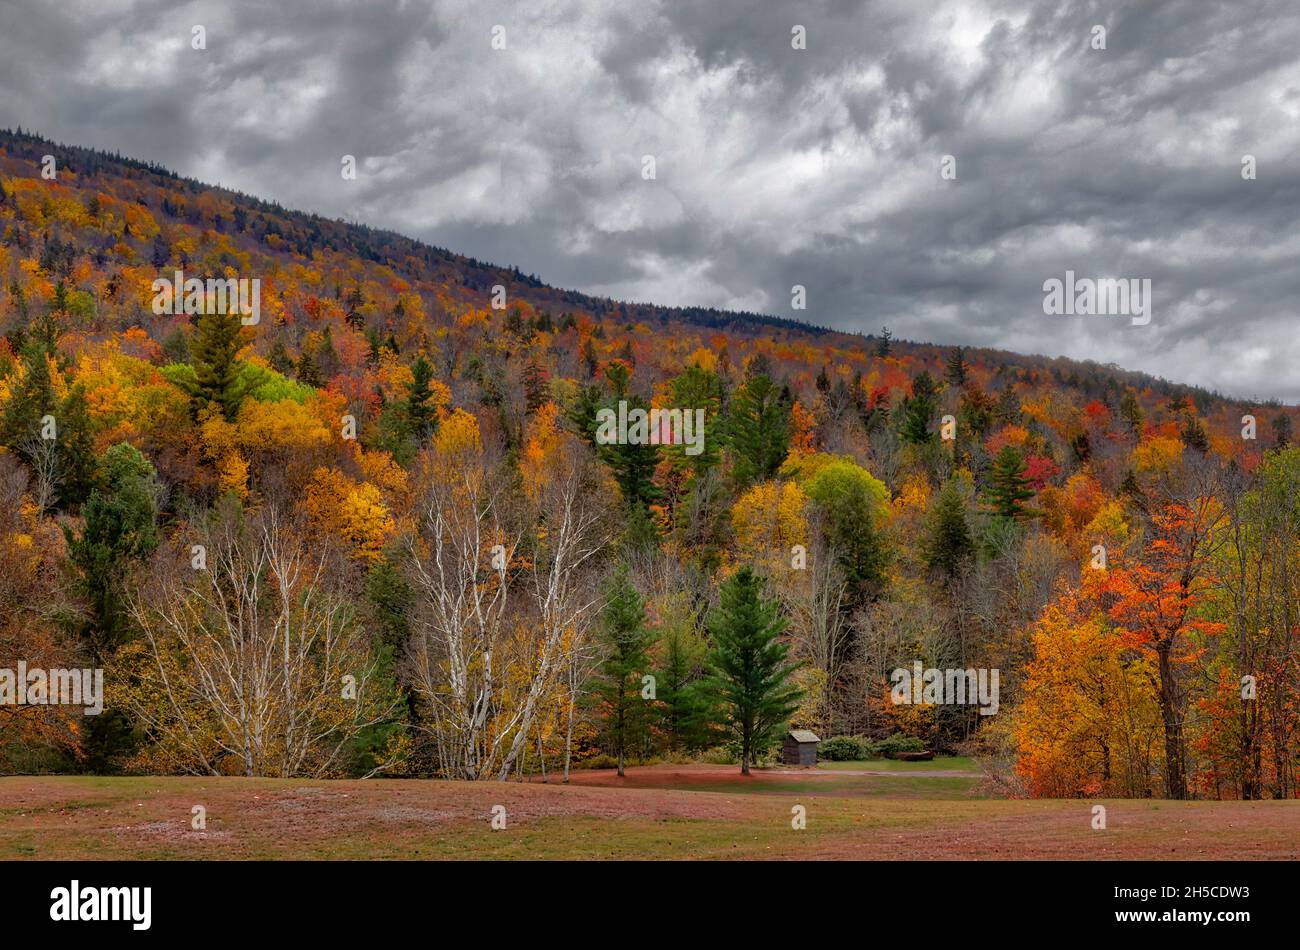 Hunter Mountain Catskill NY - le feuillage d'automne coloré couvre Hunter Mountain dans la région Catskill de la vallée de l'Hudson à New York.Un petit hangar peut b Banque D'Images